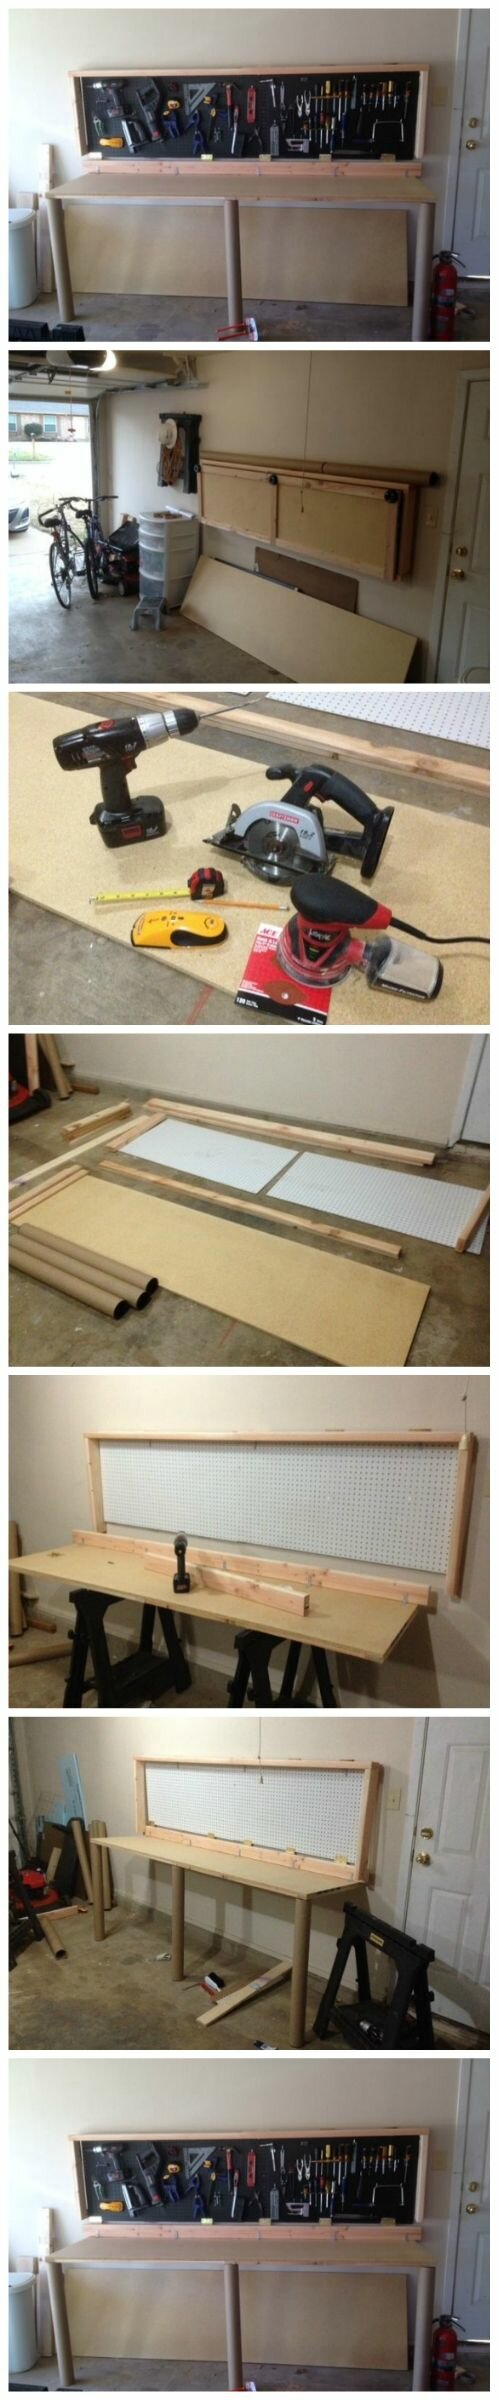 Foldaway Workbench | Wall Mounted Folding Workbench | Wall Mounted Folding Work Bench